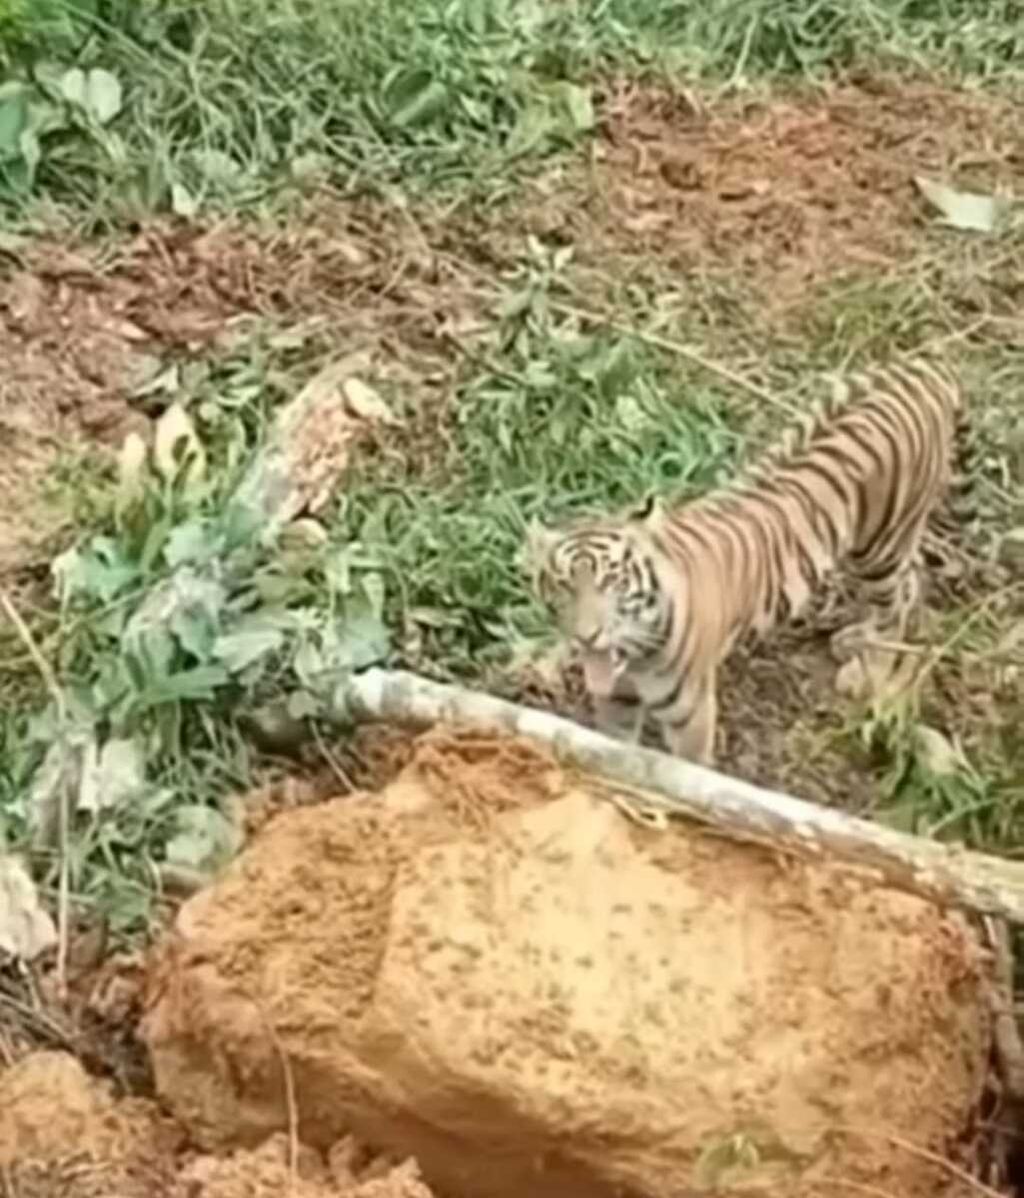 Tangkapan layar video harimau yang menghadang ekskavator saat pembukaan lahan untuk perkebunan sawit di Kabupaten Pasaman Barat, Sumatera Barat, Senin (17/1/2022).